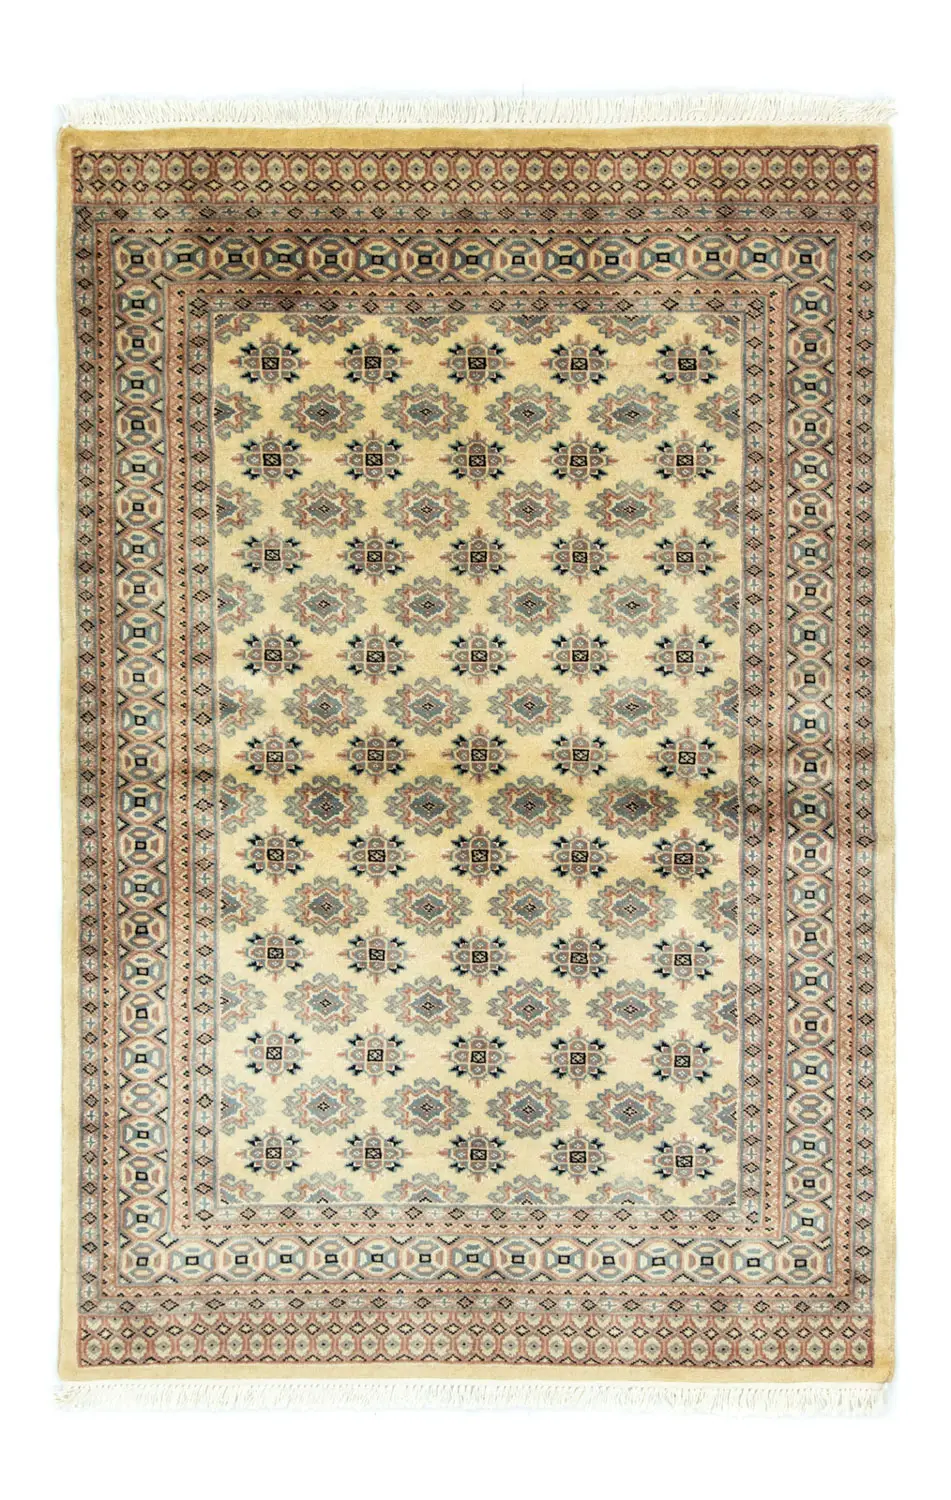 Pakistan Teppich - 184 x 122 cm - beige